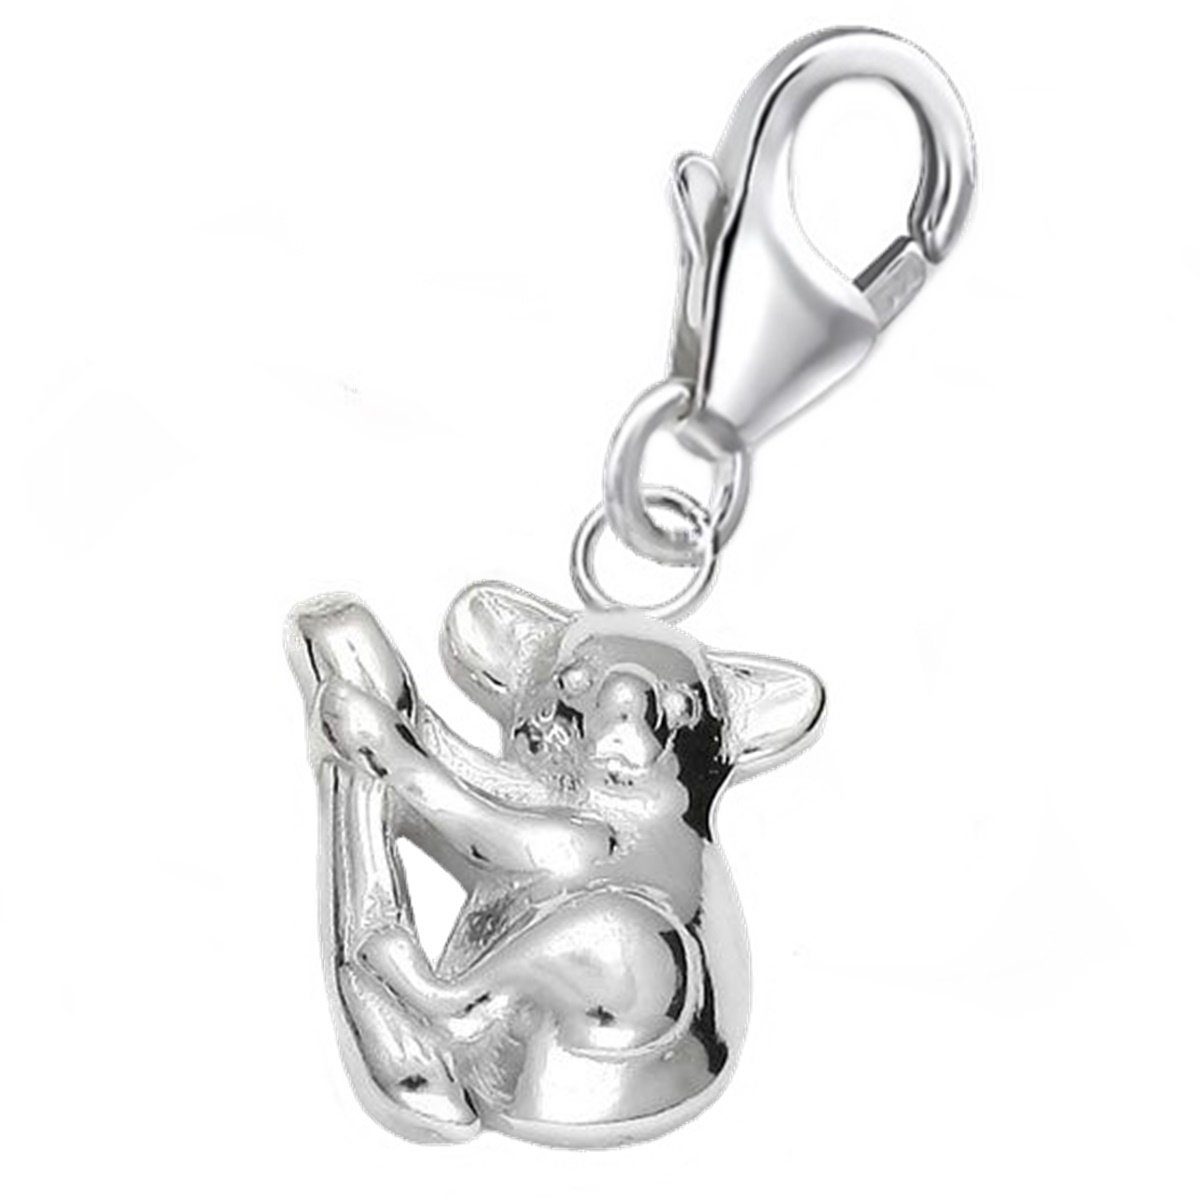 Goldene Hufeisen Charm-Einhänger Koala auf Ast Karabiner Charm Anhänger 925 Silber (1 Stück, inkl. Etui), für Gliederarmband oder Halskette